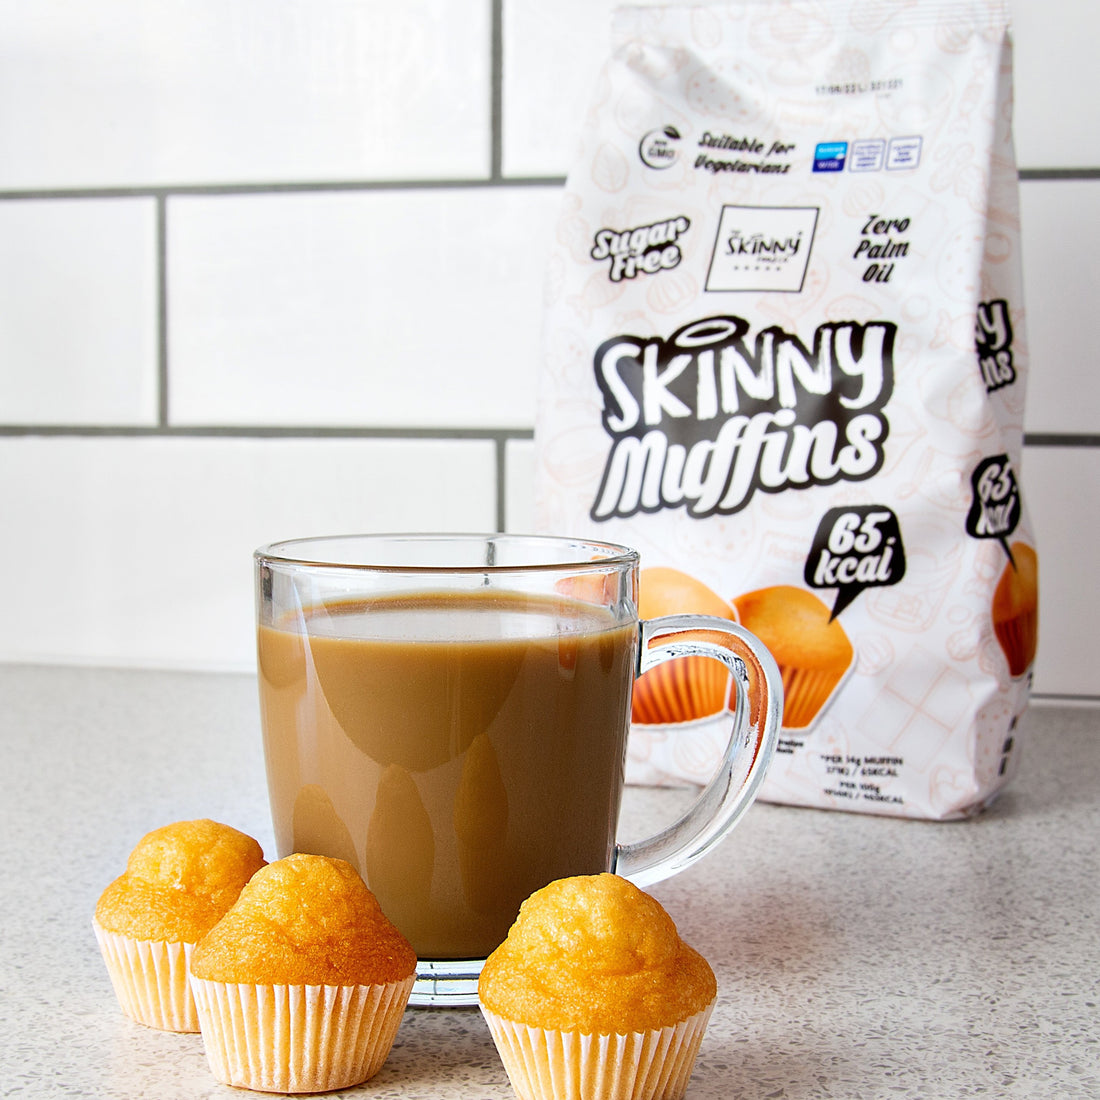 Wir stellen unsere NEUEN zuckerfreien Skinny Muffins vor! - theskinnyfoodco